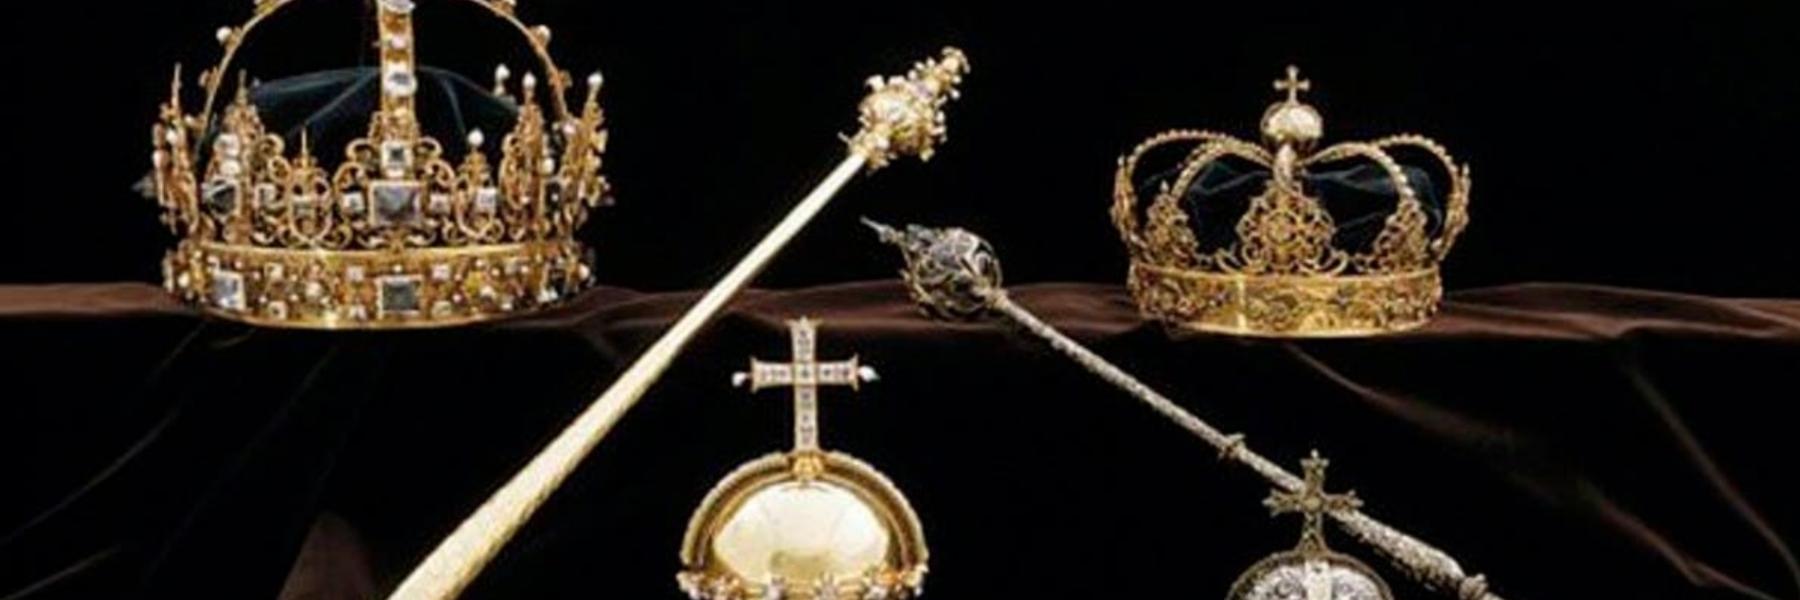 مجوهرات ملكية